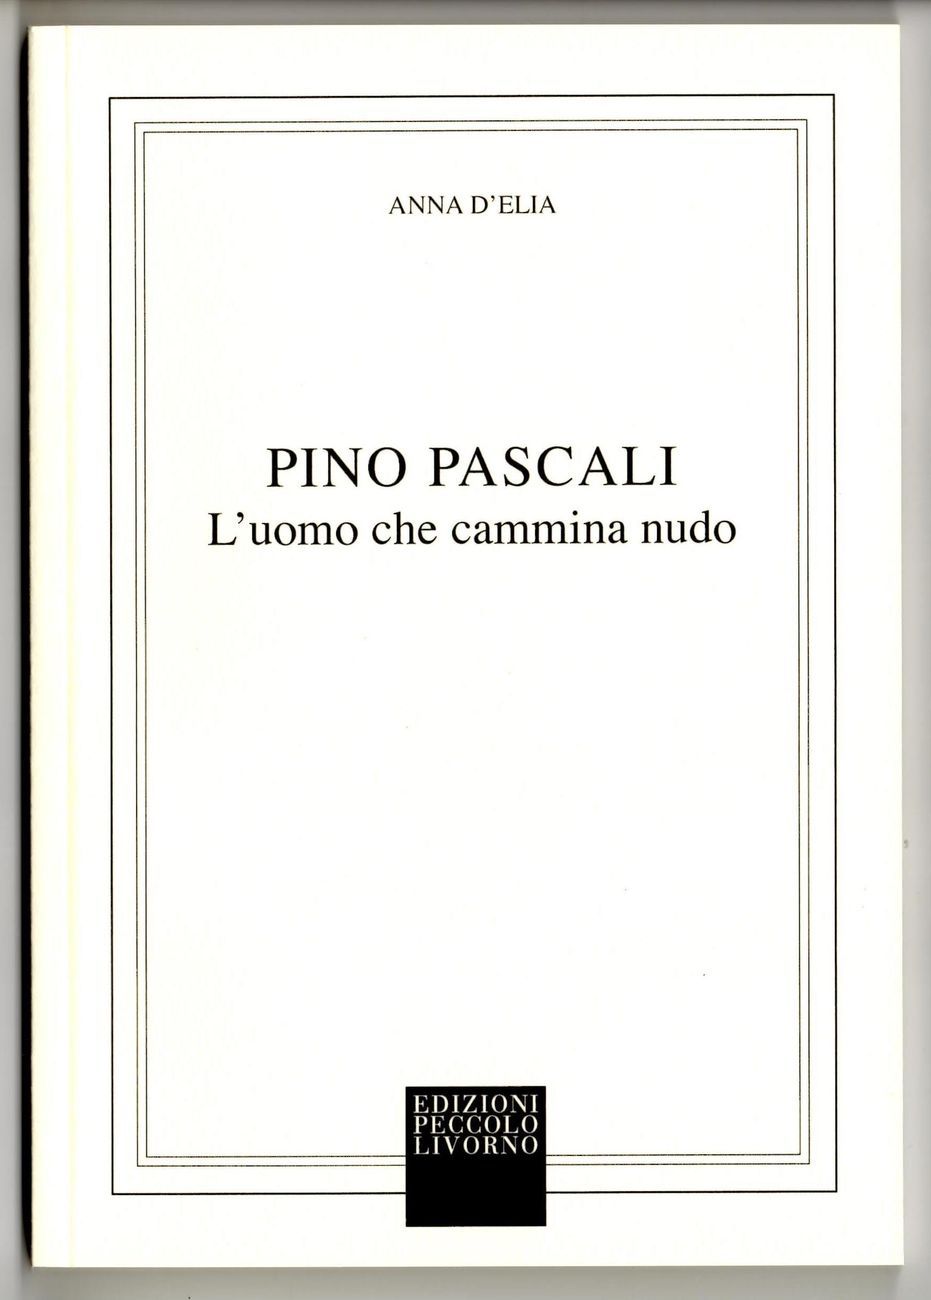 Anna D’Elia – Pino Pascali (Peccolo, Livorno 2018)